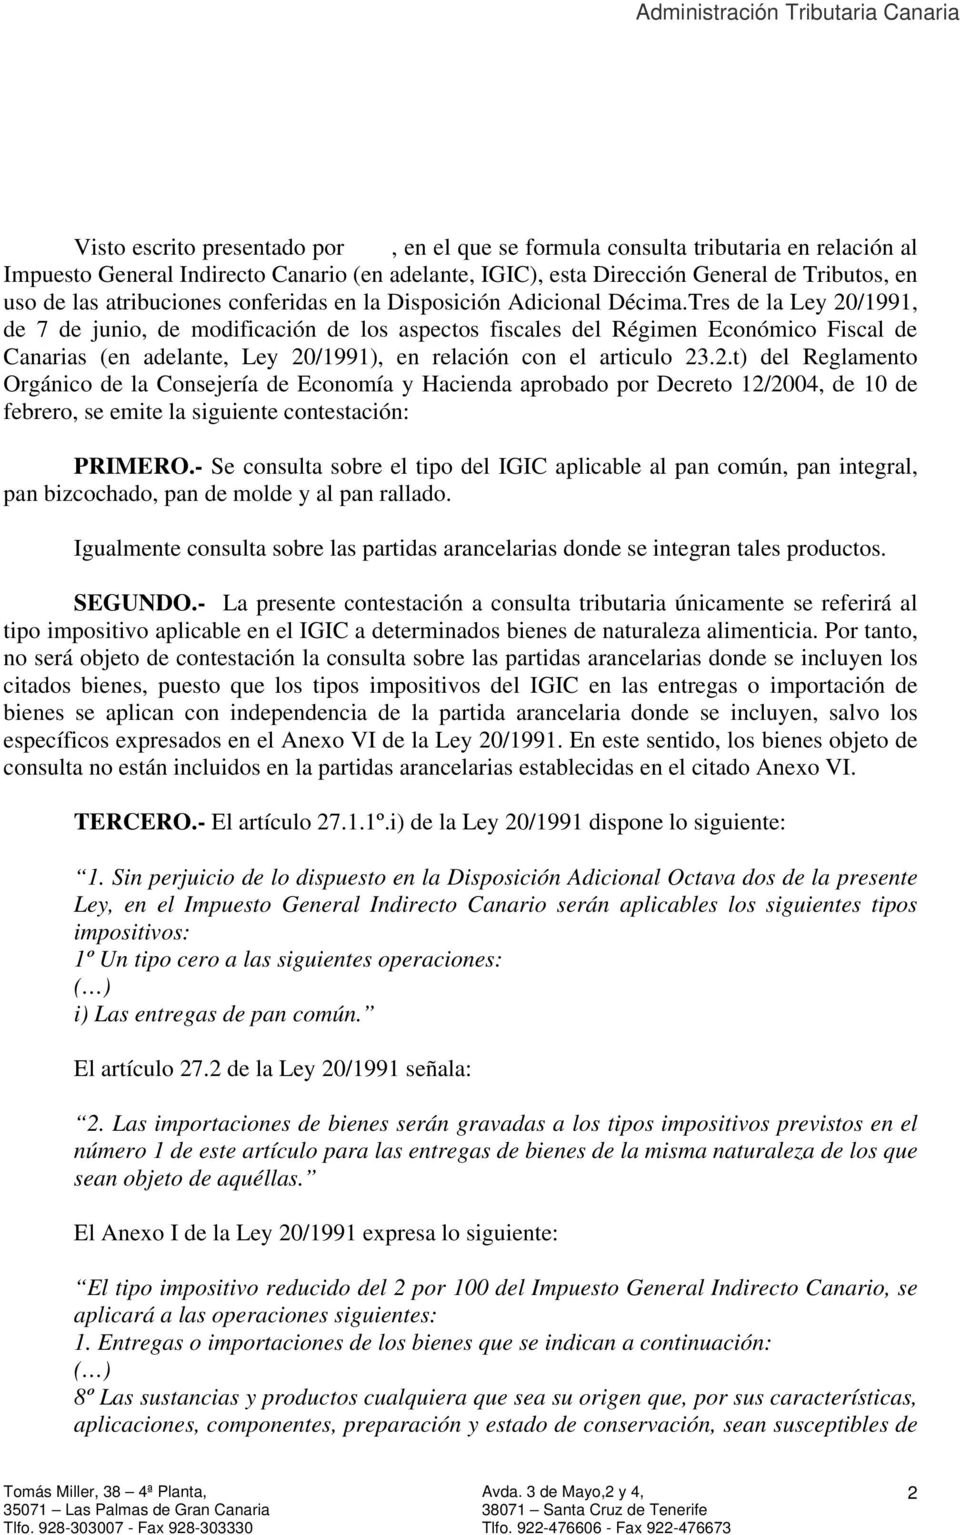 Tres de la Ley 20/1991, de 7 de junio, de modificación de los aspectos fiscales del Régimen Económico Fiscal de Canarias (en adelante, Ley 20/1991), en relación con el articulo 23.2.t) del Reglamento Orgánico de la Consejería de Economía y Hacienda aprobado por Decreto 12/2004, de 10 de febrero, se emite la siguiente contestación: PRIMERO.